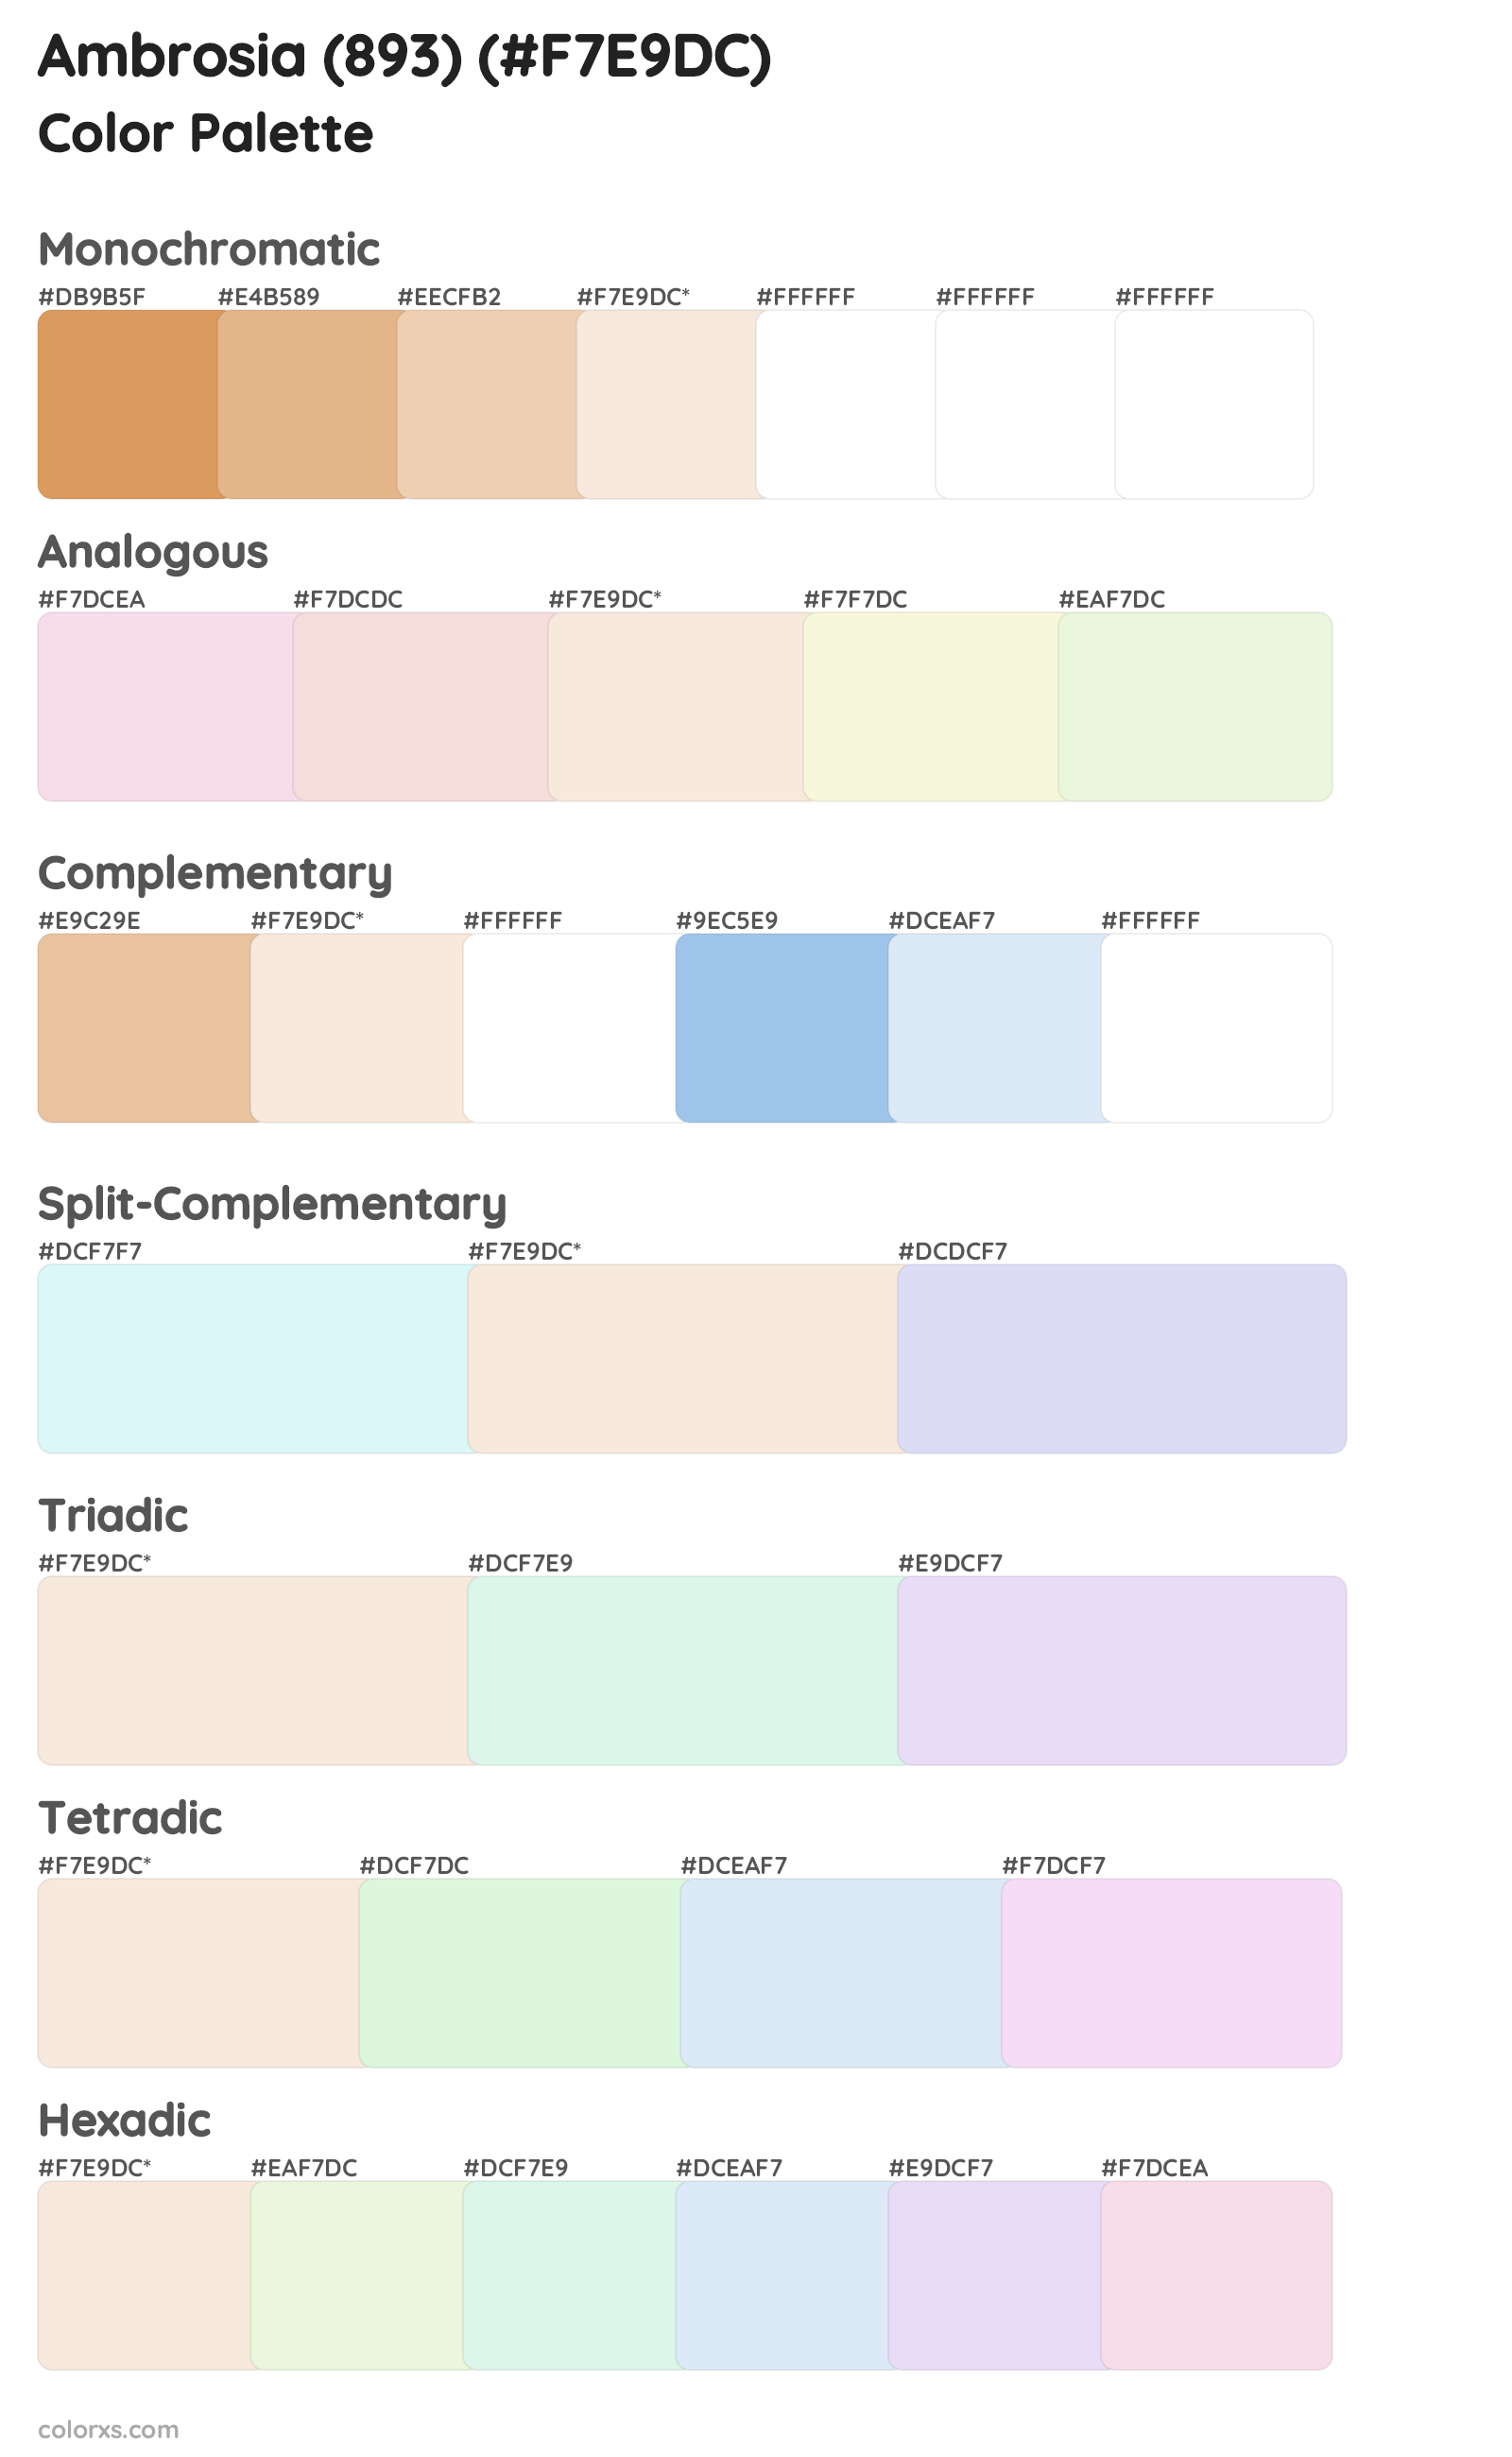 Ambrosia (893) Color Scheme Palettes